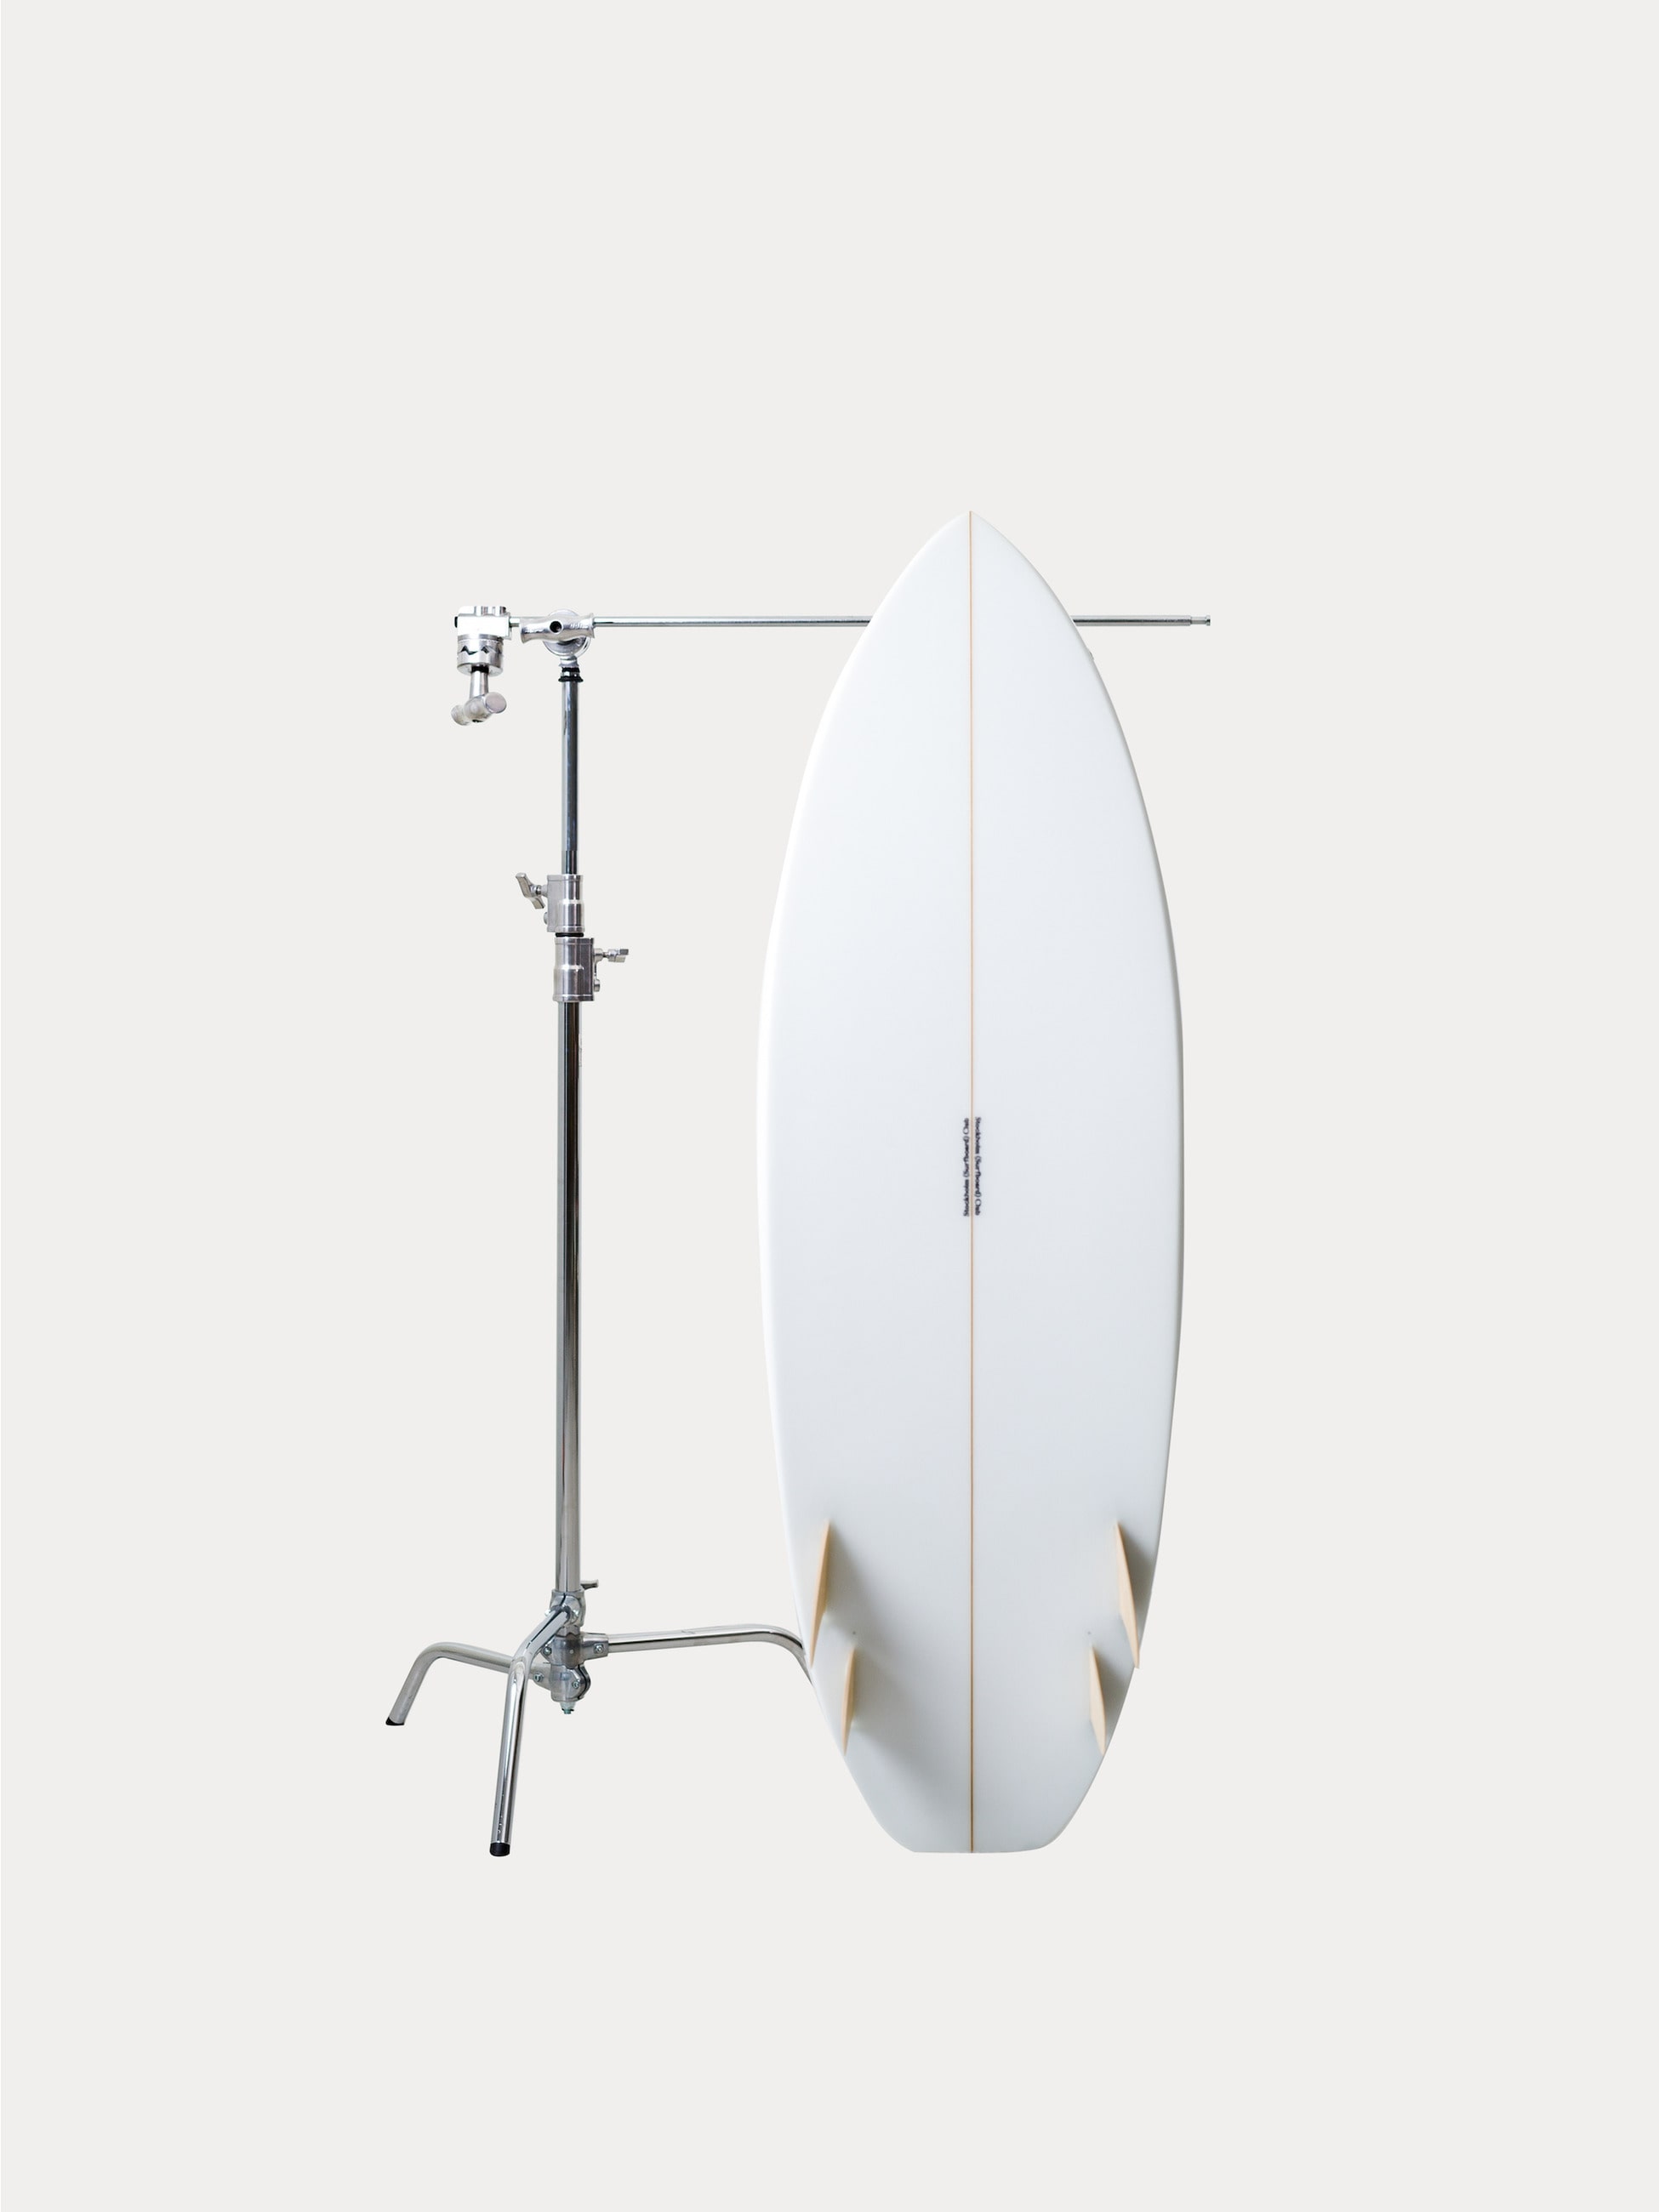 Surfboard Speed dialer 5’4 詳細画像 clear 2